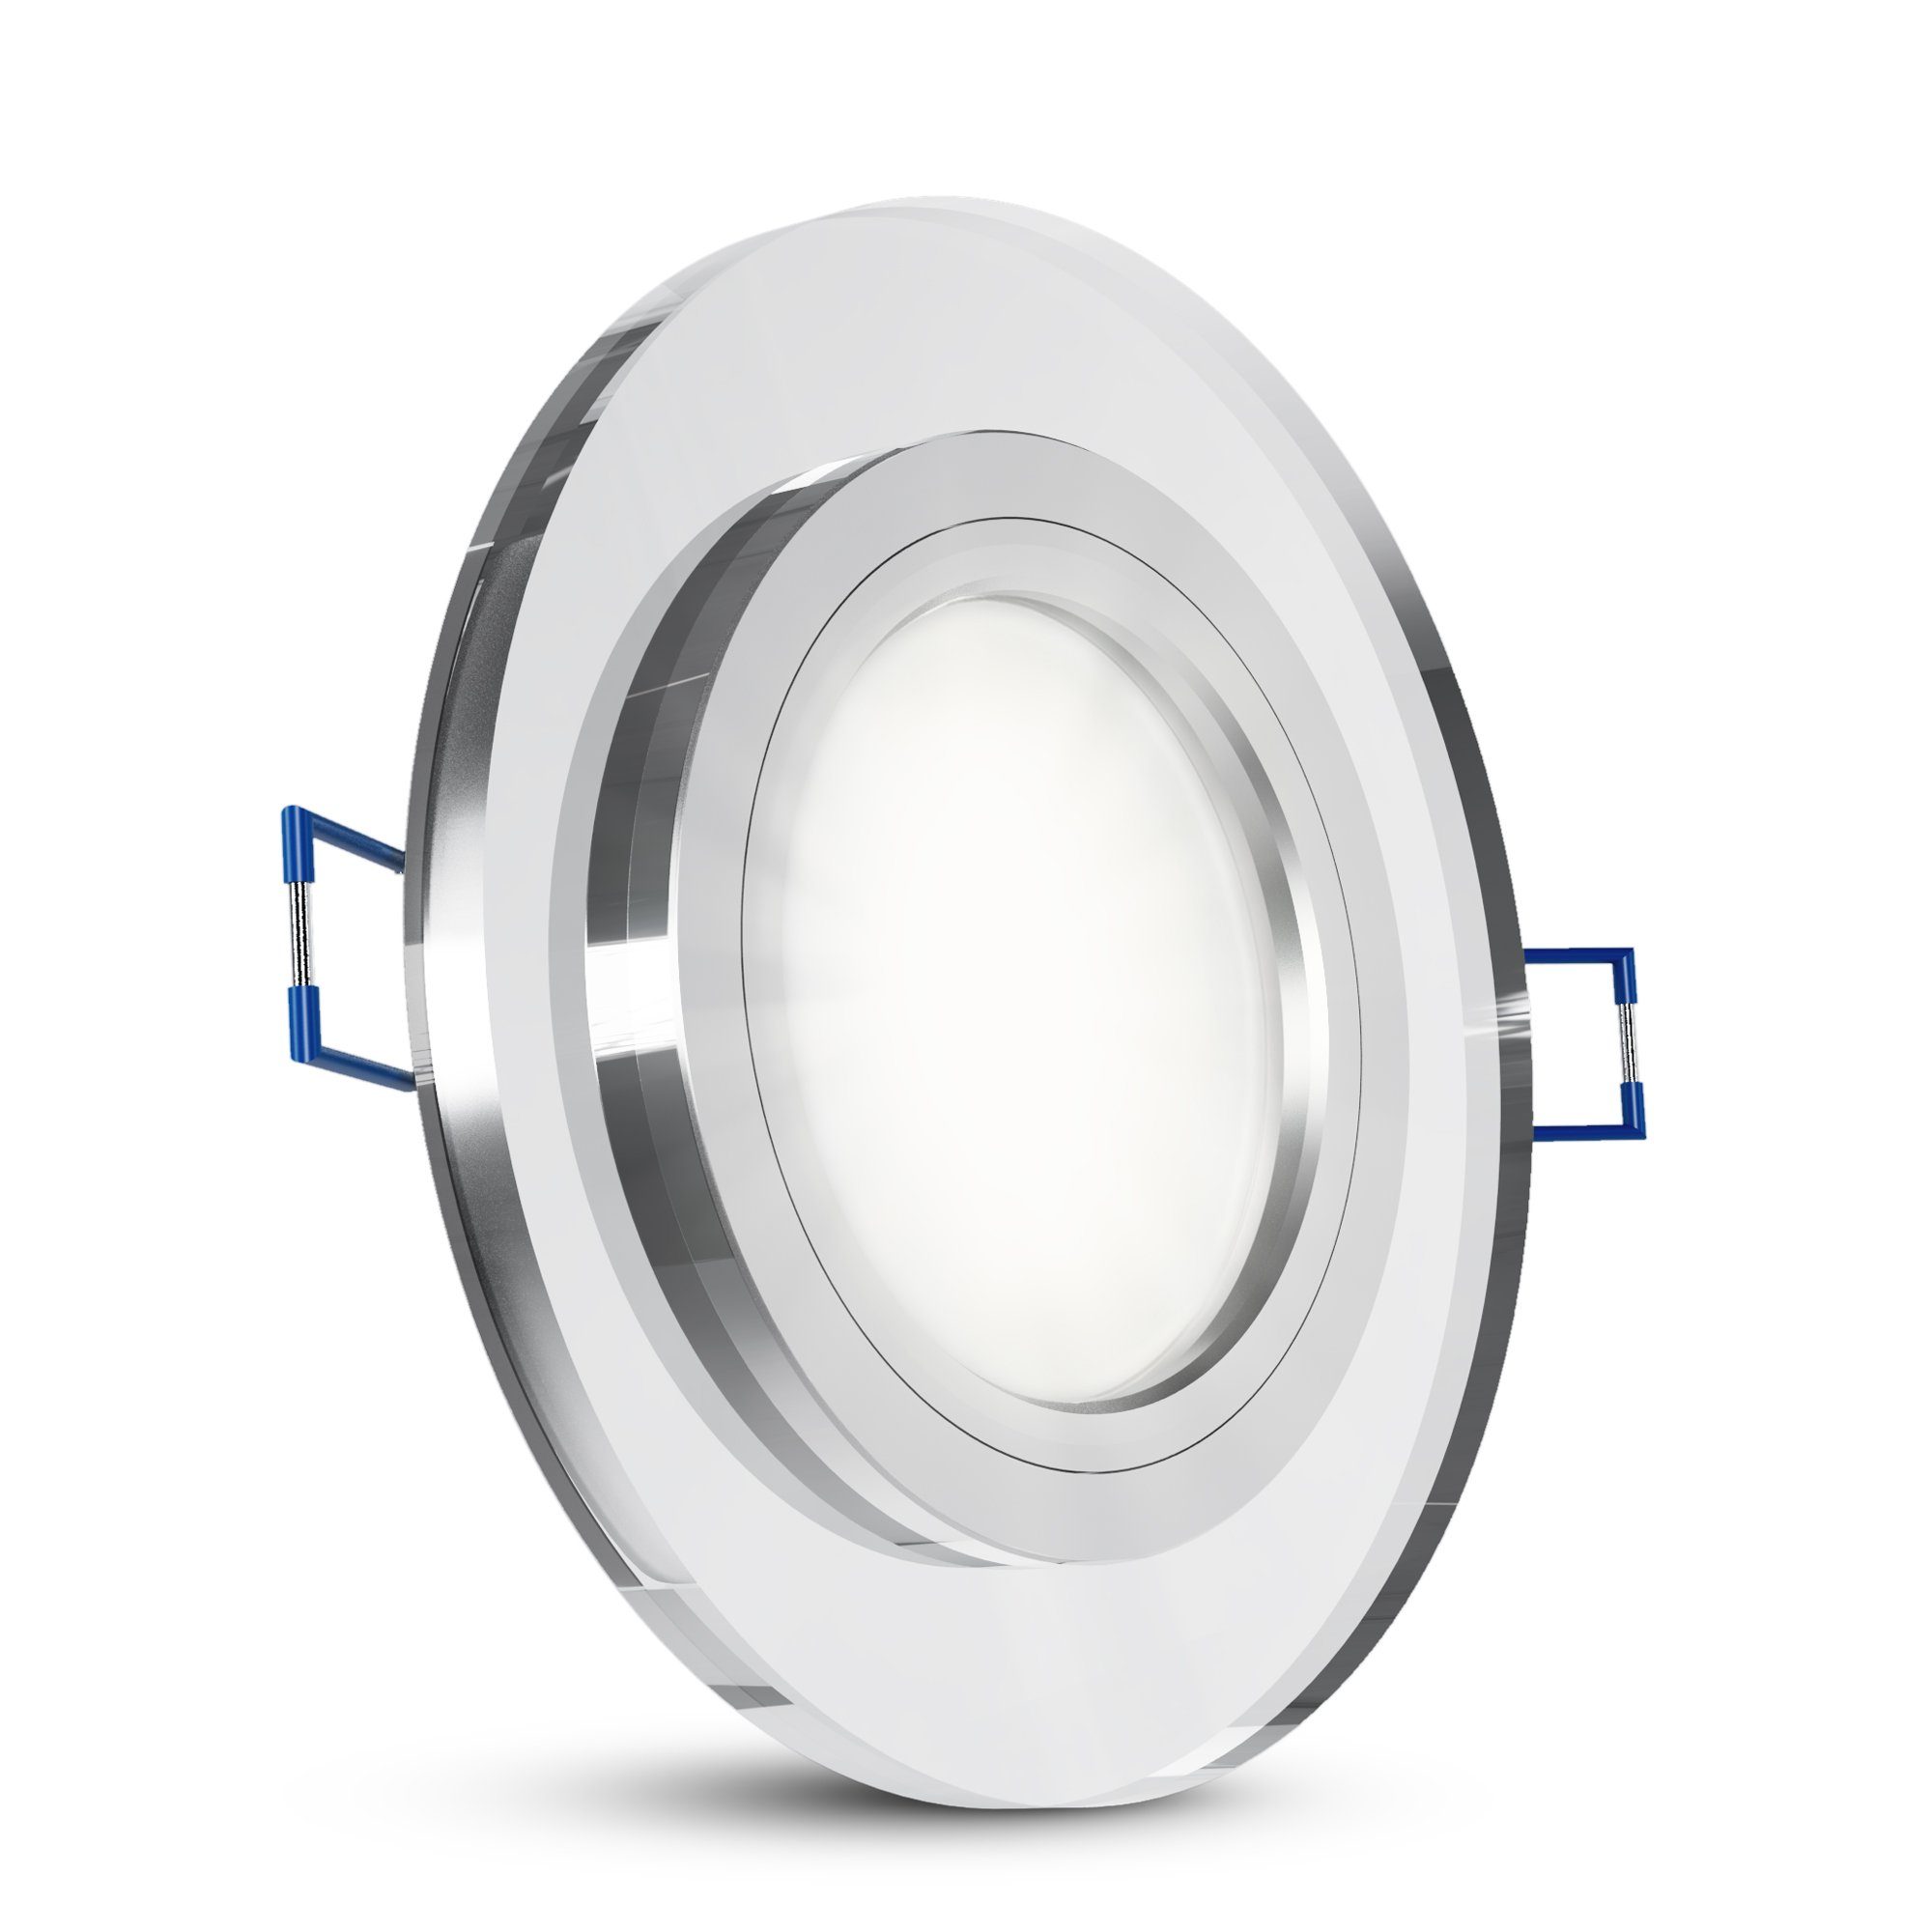 SSC-LUXon LED Einbaustrahler Flacher Design Glas Einbauspot LED rund klar mit LED Modul neutral, Neutralweiß